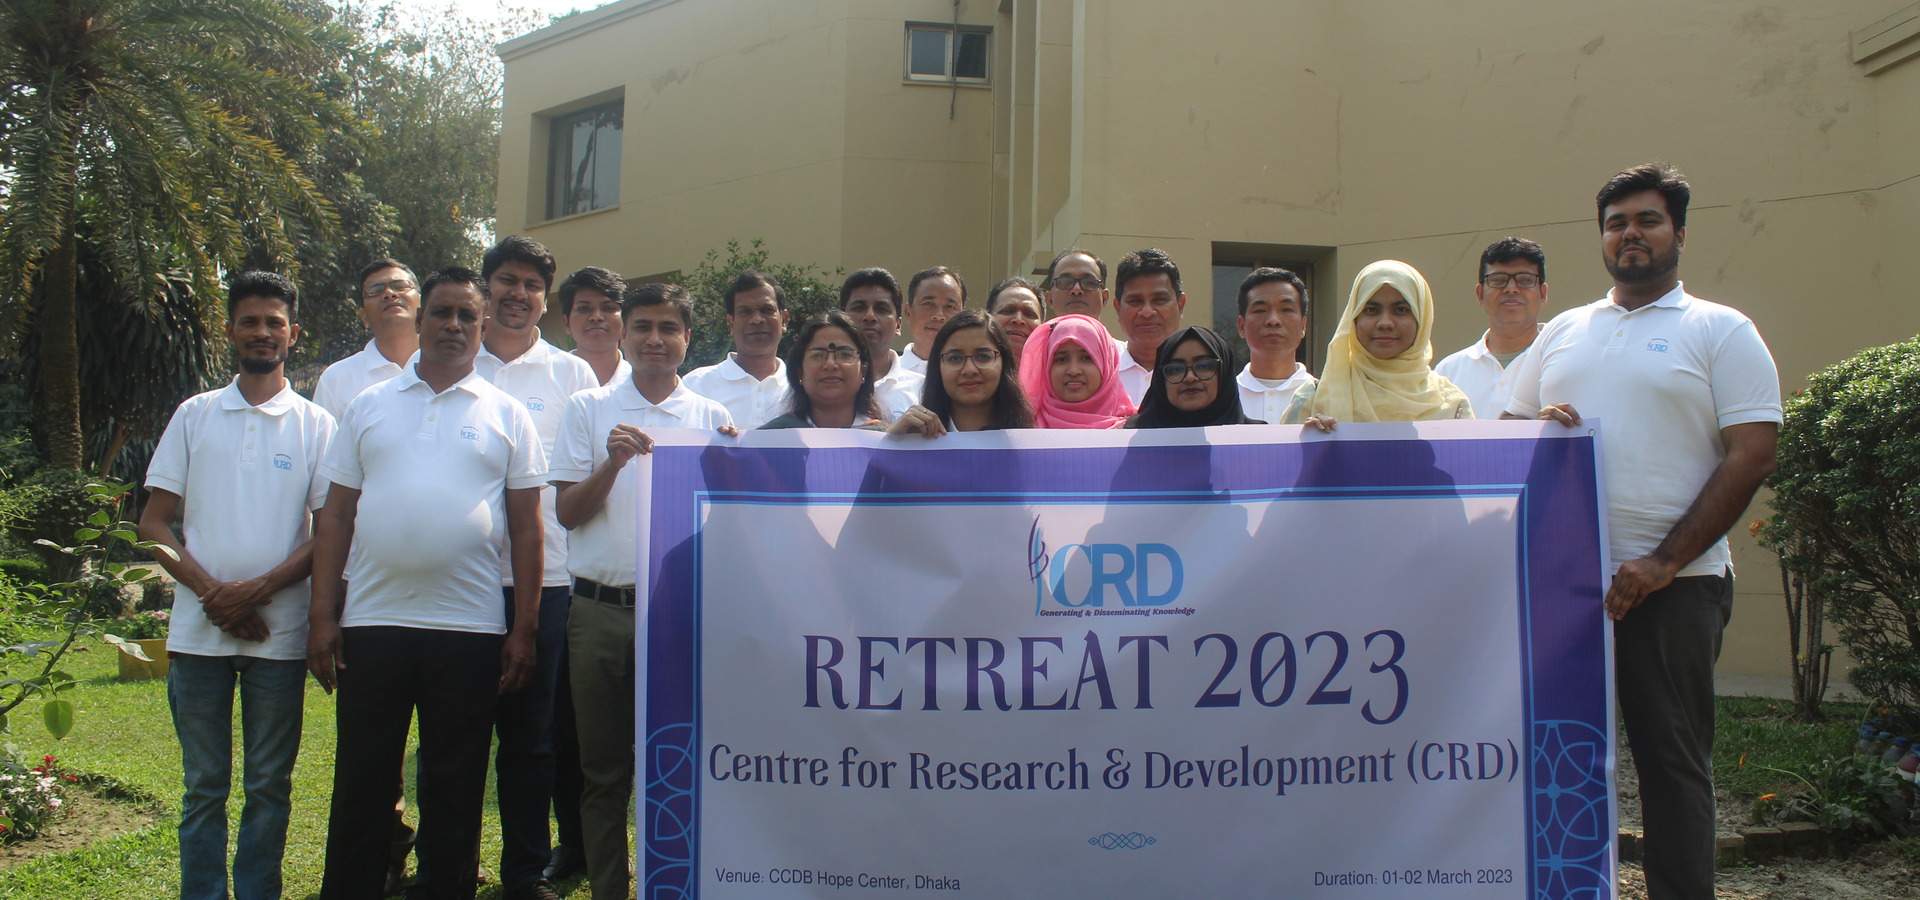 CRD Retreat 2023 